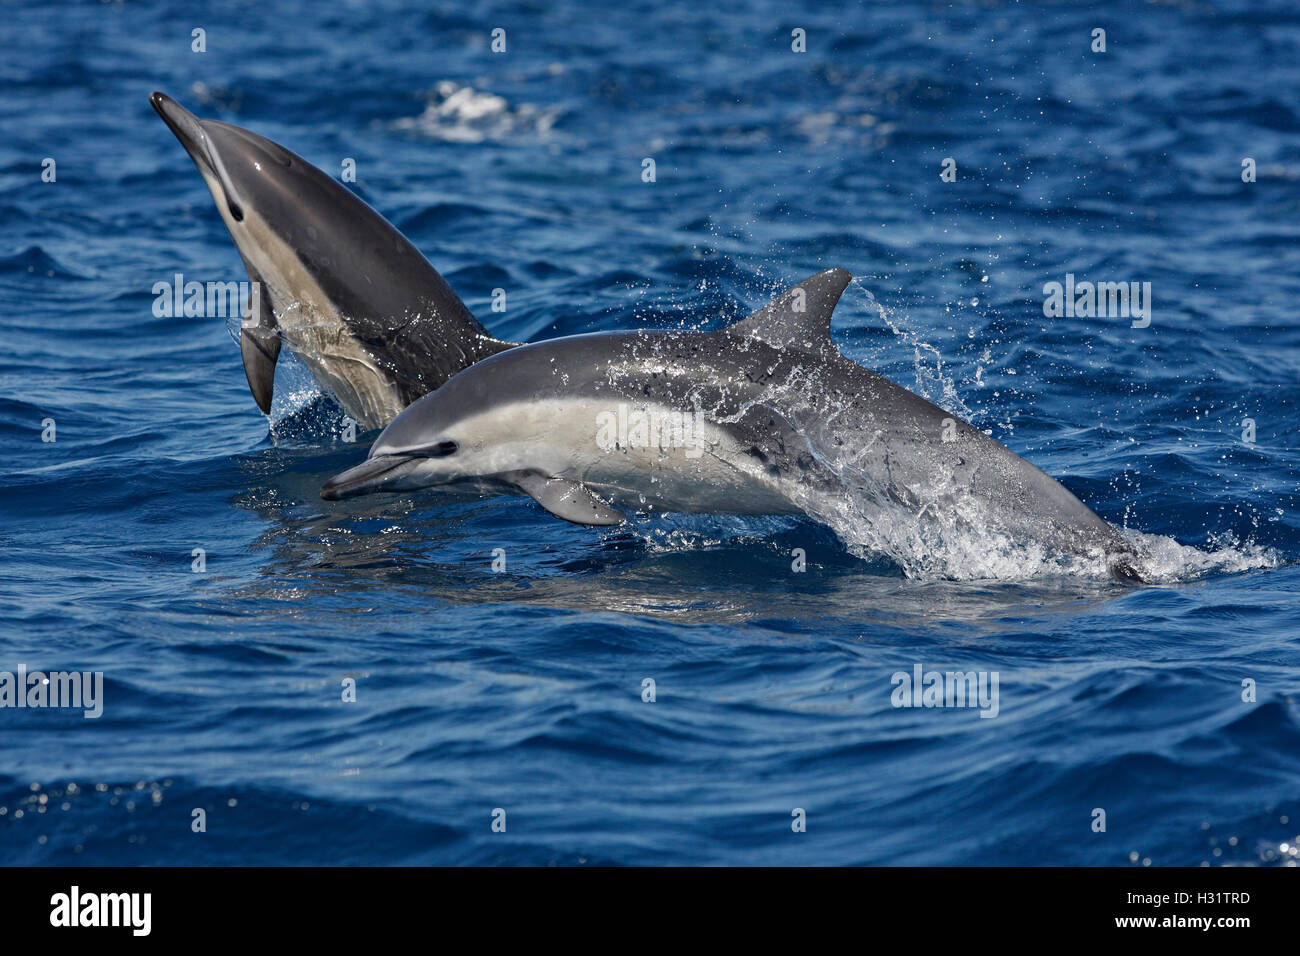 Les Dauphins communs (Delphinus delphis), aussi appelé dauphin commun court. À long bec peut-être des dauphins communs (Delphinus c Banque D'Images